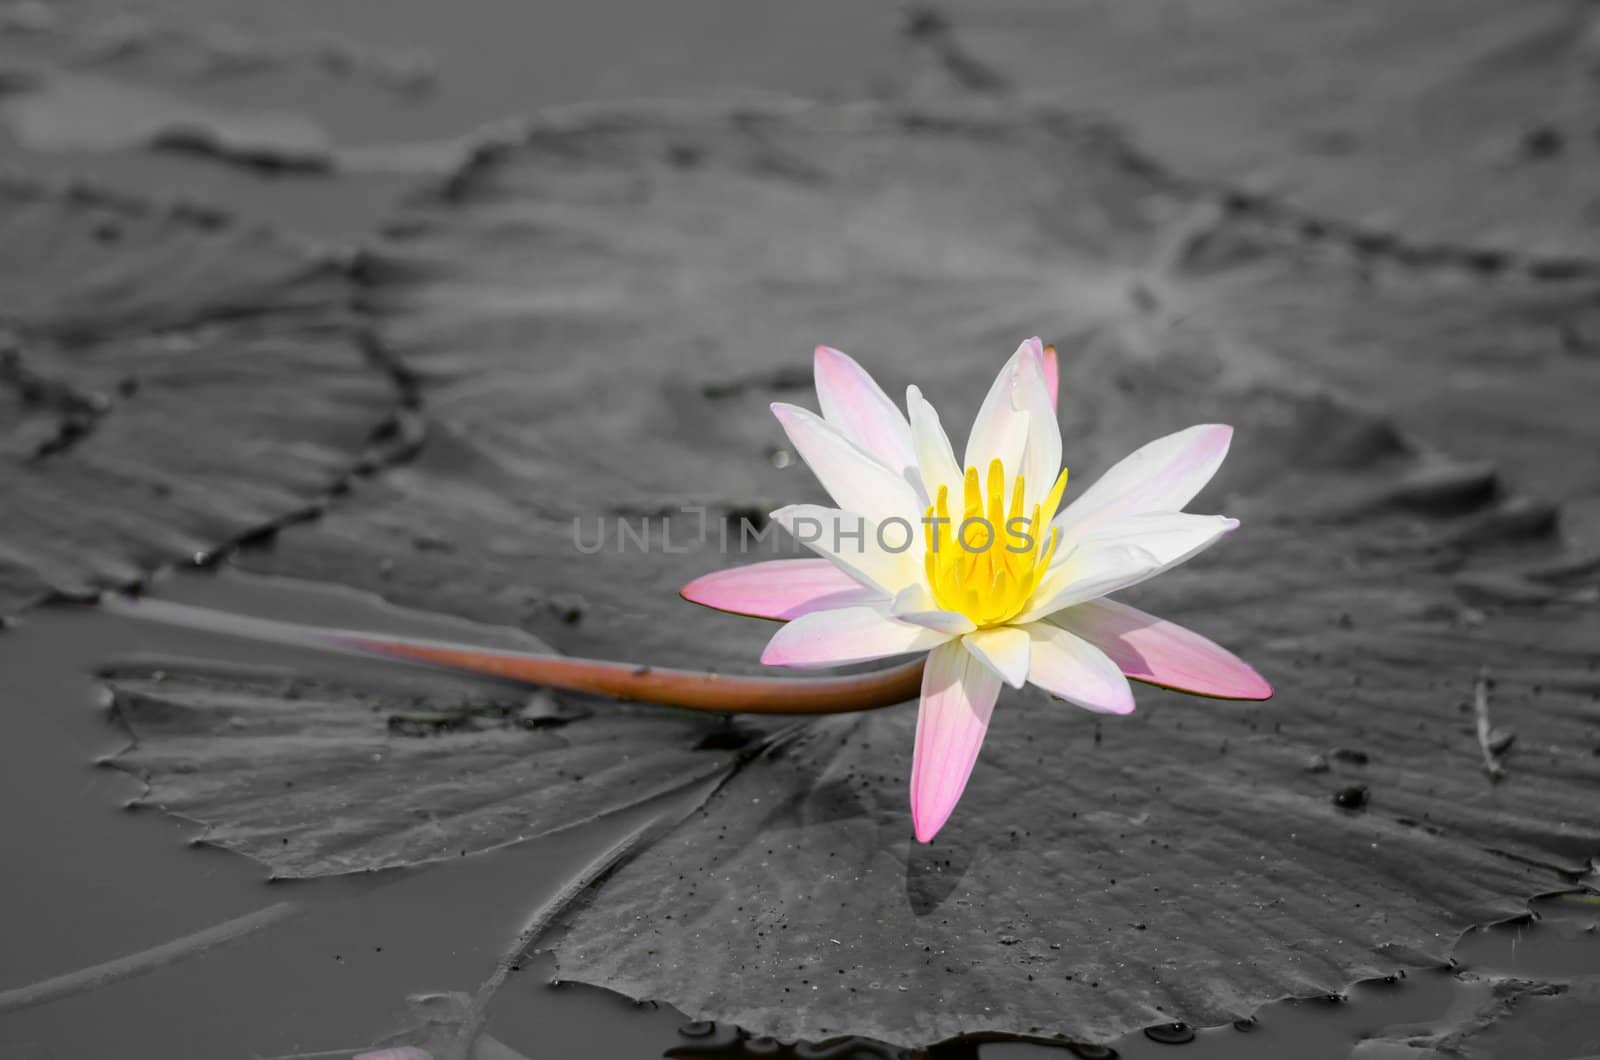 Lily flower by iryna_rasko